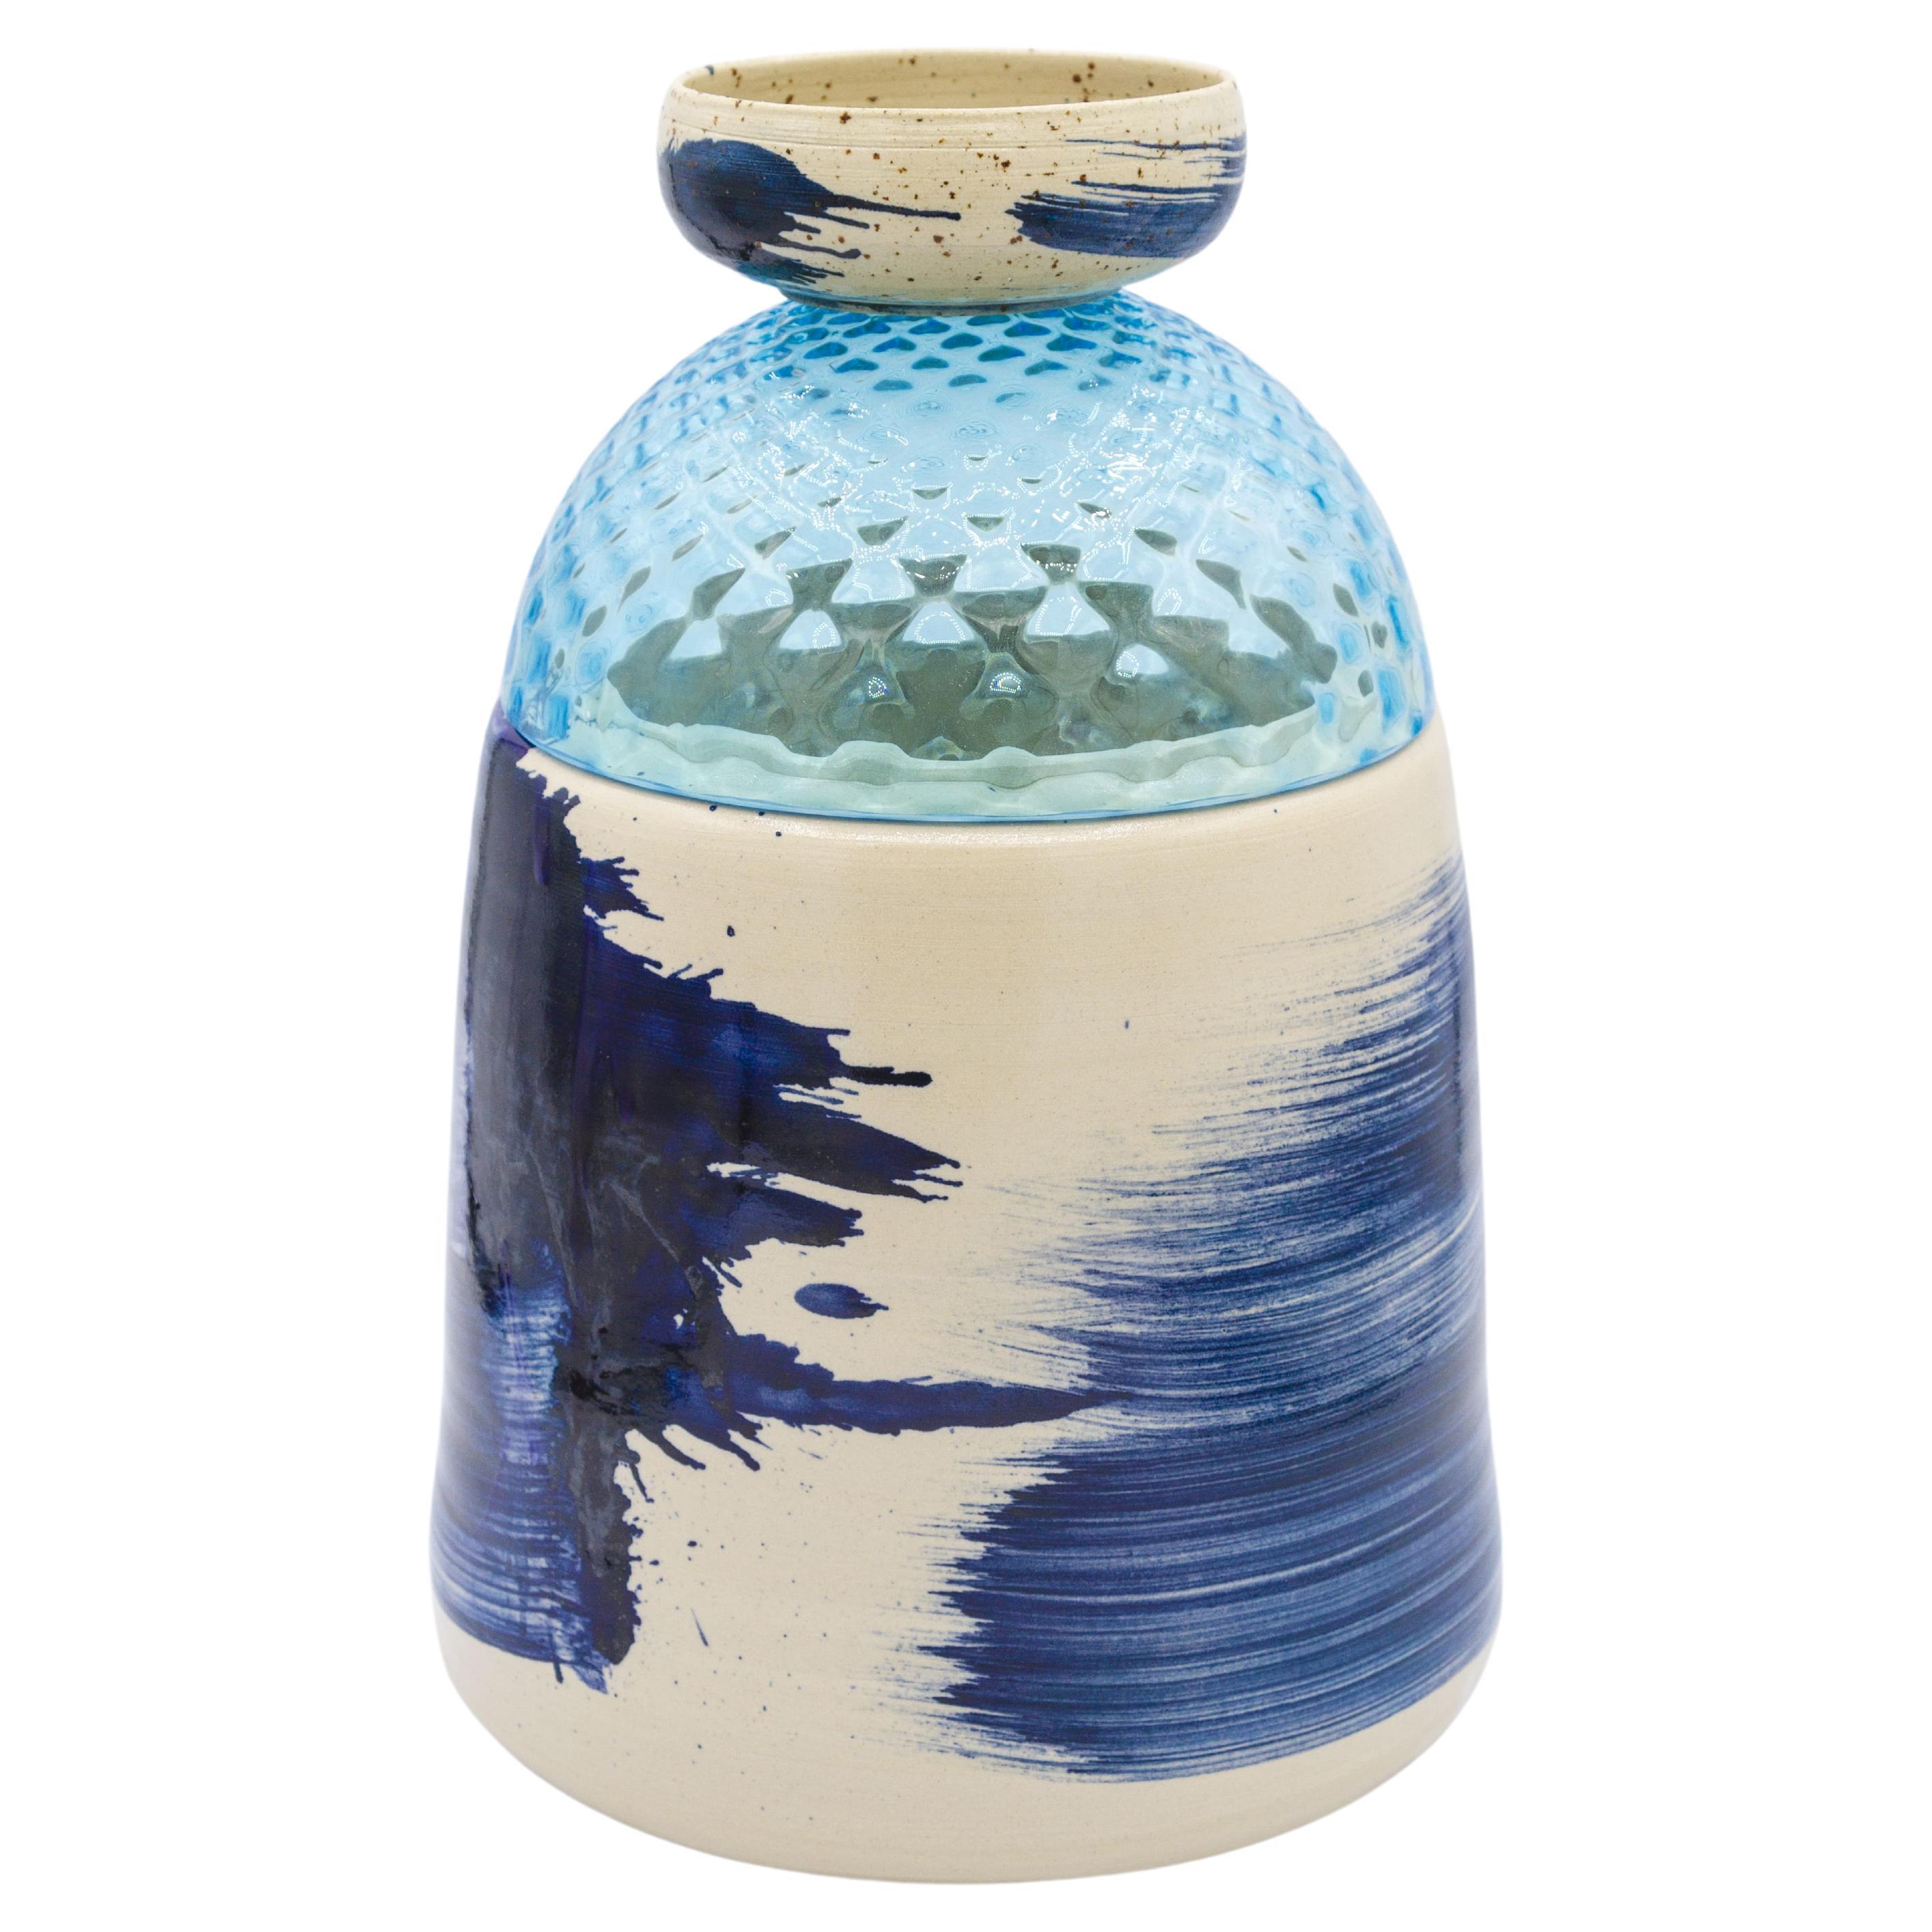 Murano glass vase with handmade dotted white ceramic